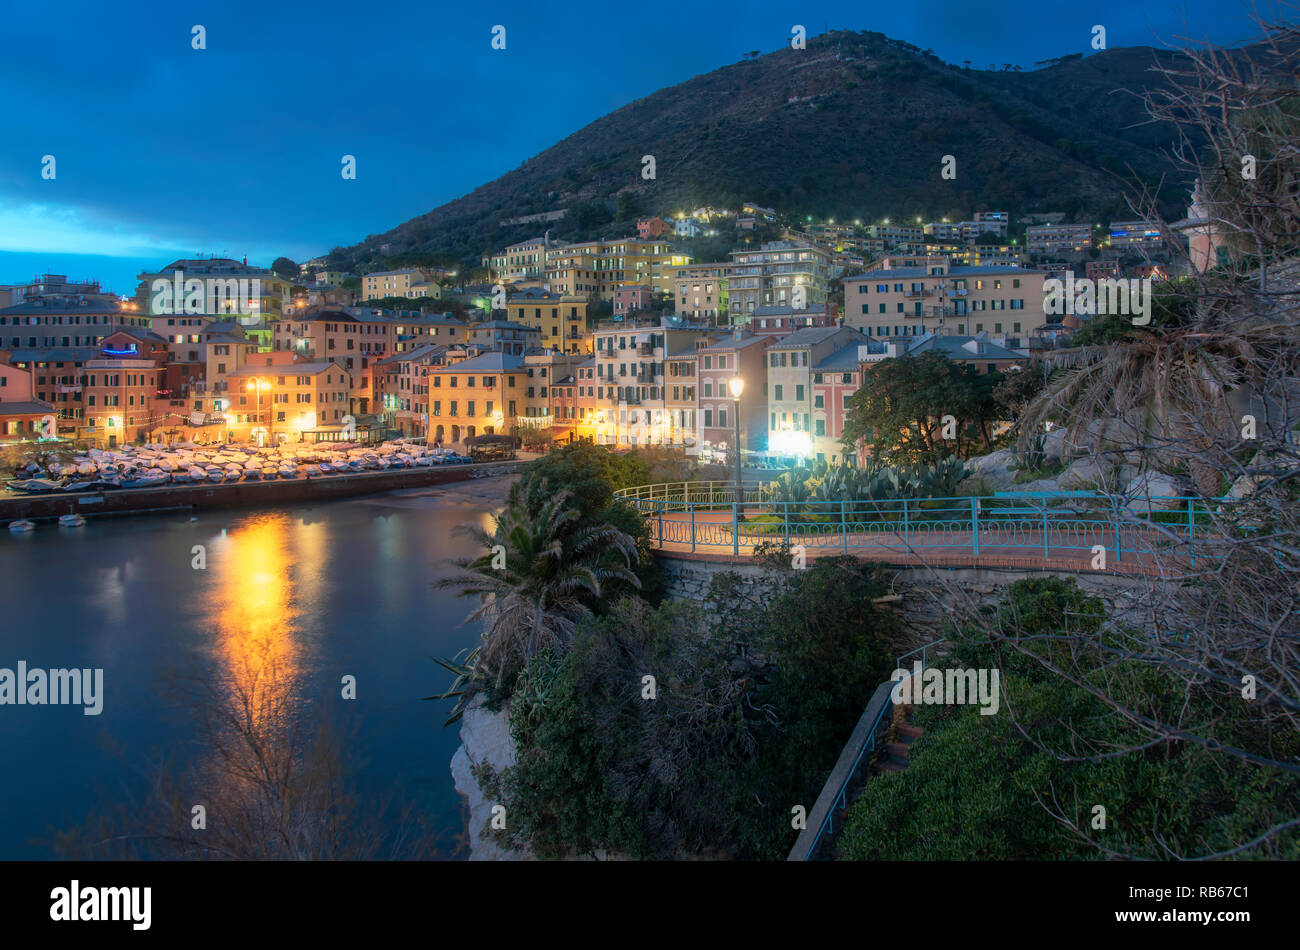 Scène de nuit à Nervi, Gênes, Italie, donnant sur le port avec ses bâtiments historiques sur la montagne et lumières réfléchissant sur l'eau calme dans la b Banque D'Images